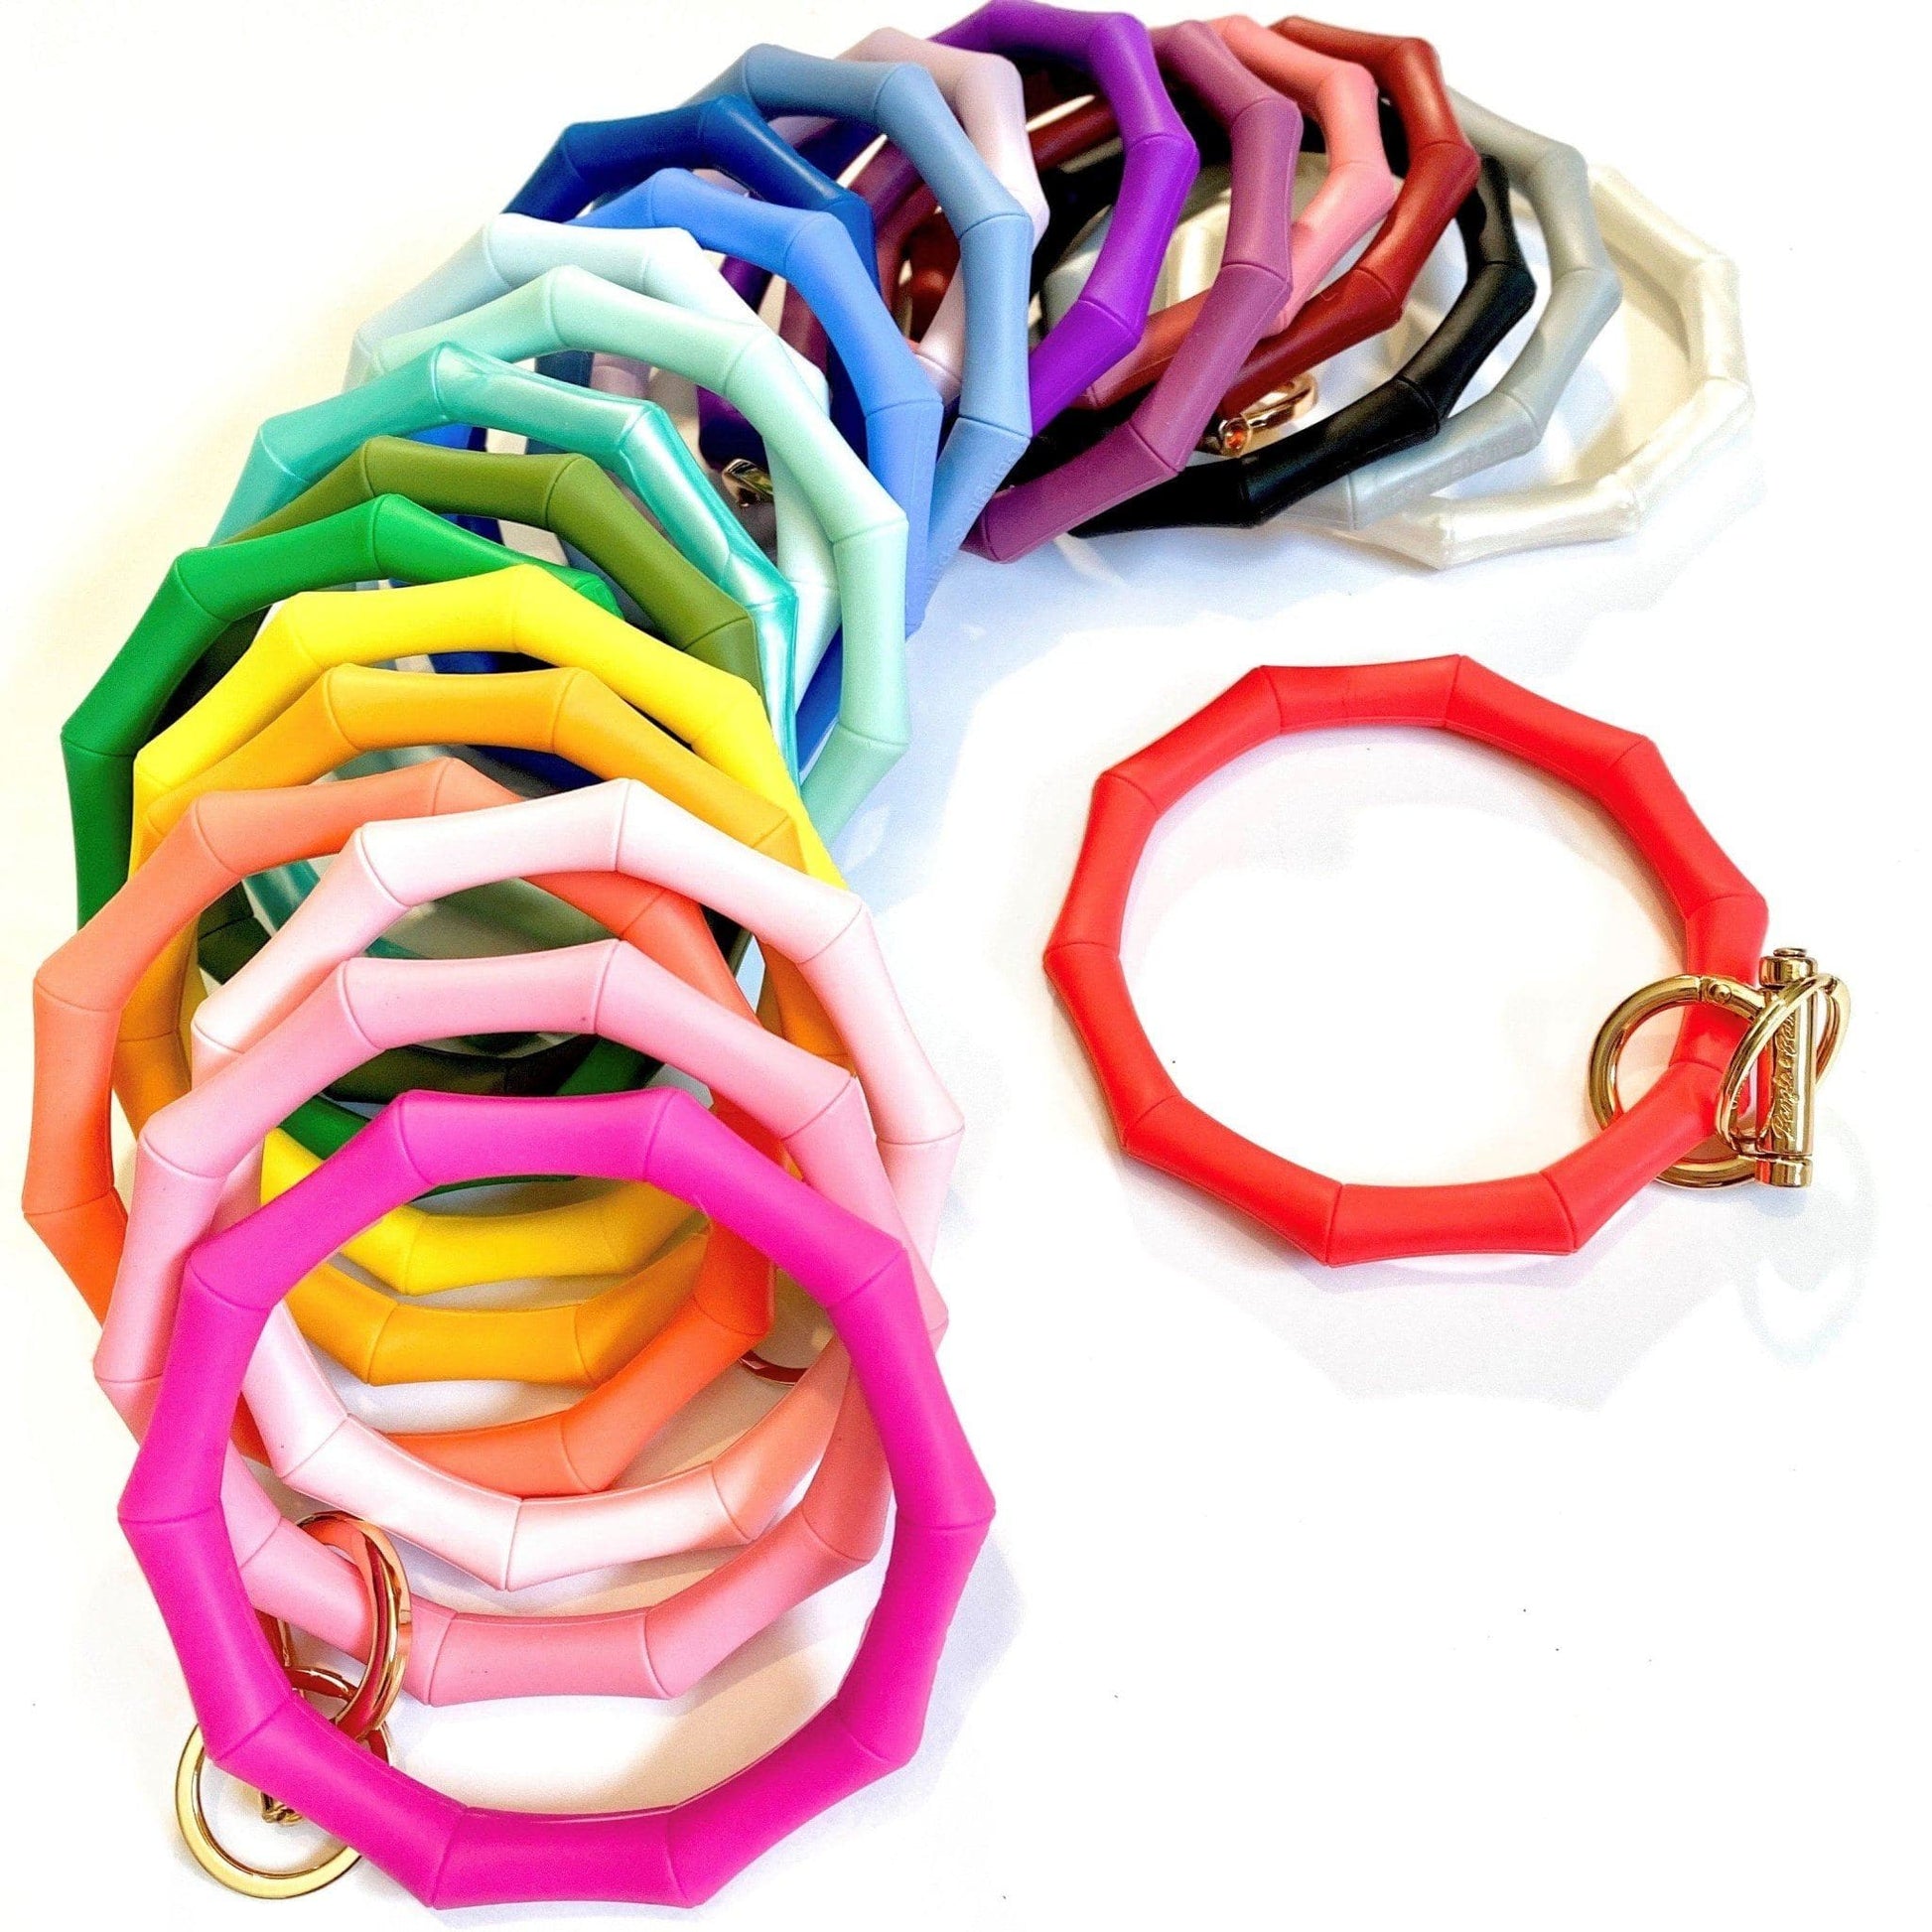 Twisted Bangle Bracelet – Bangle & Babe Bracelet Key Ring